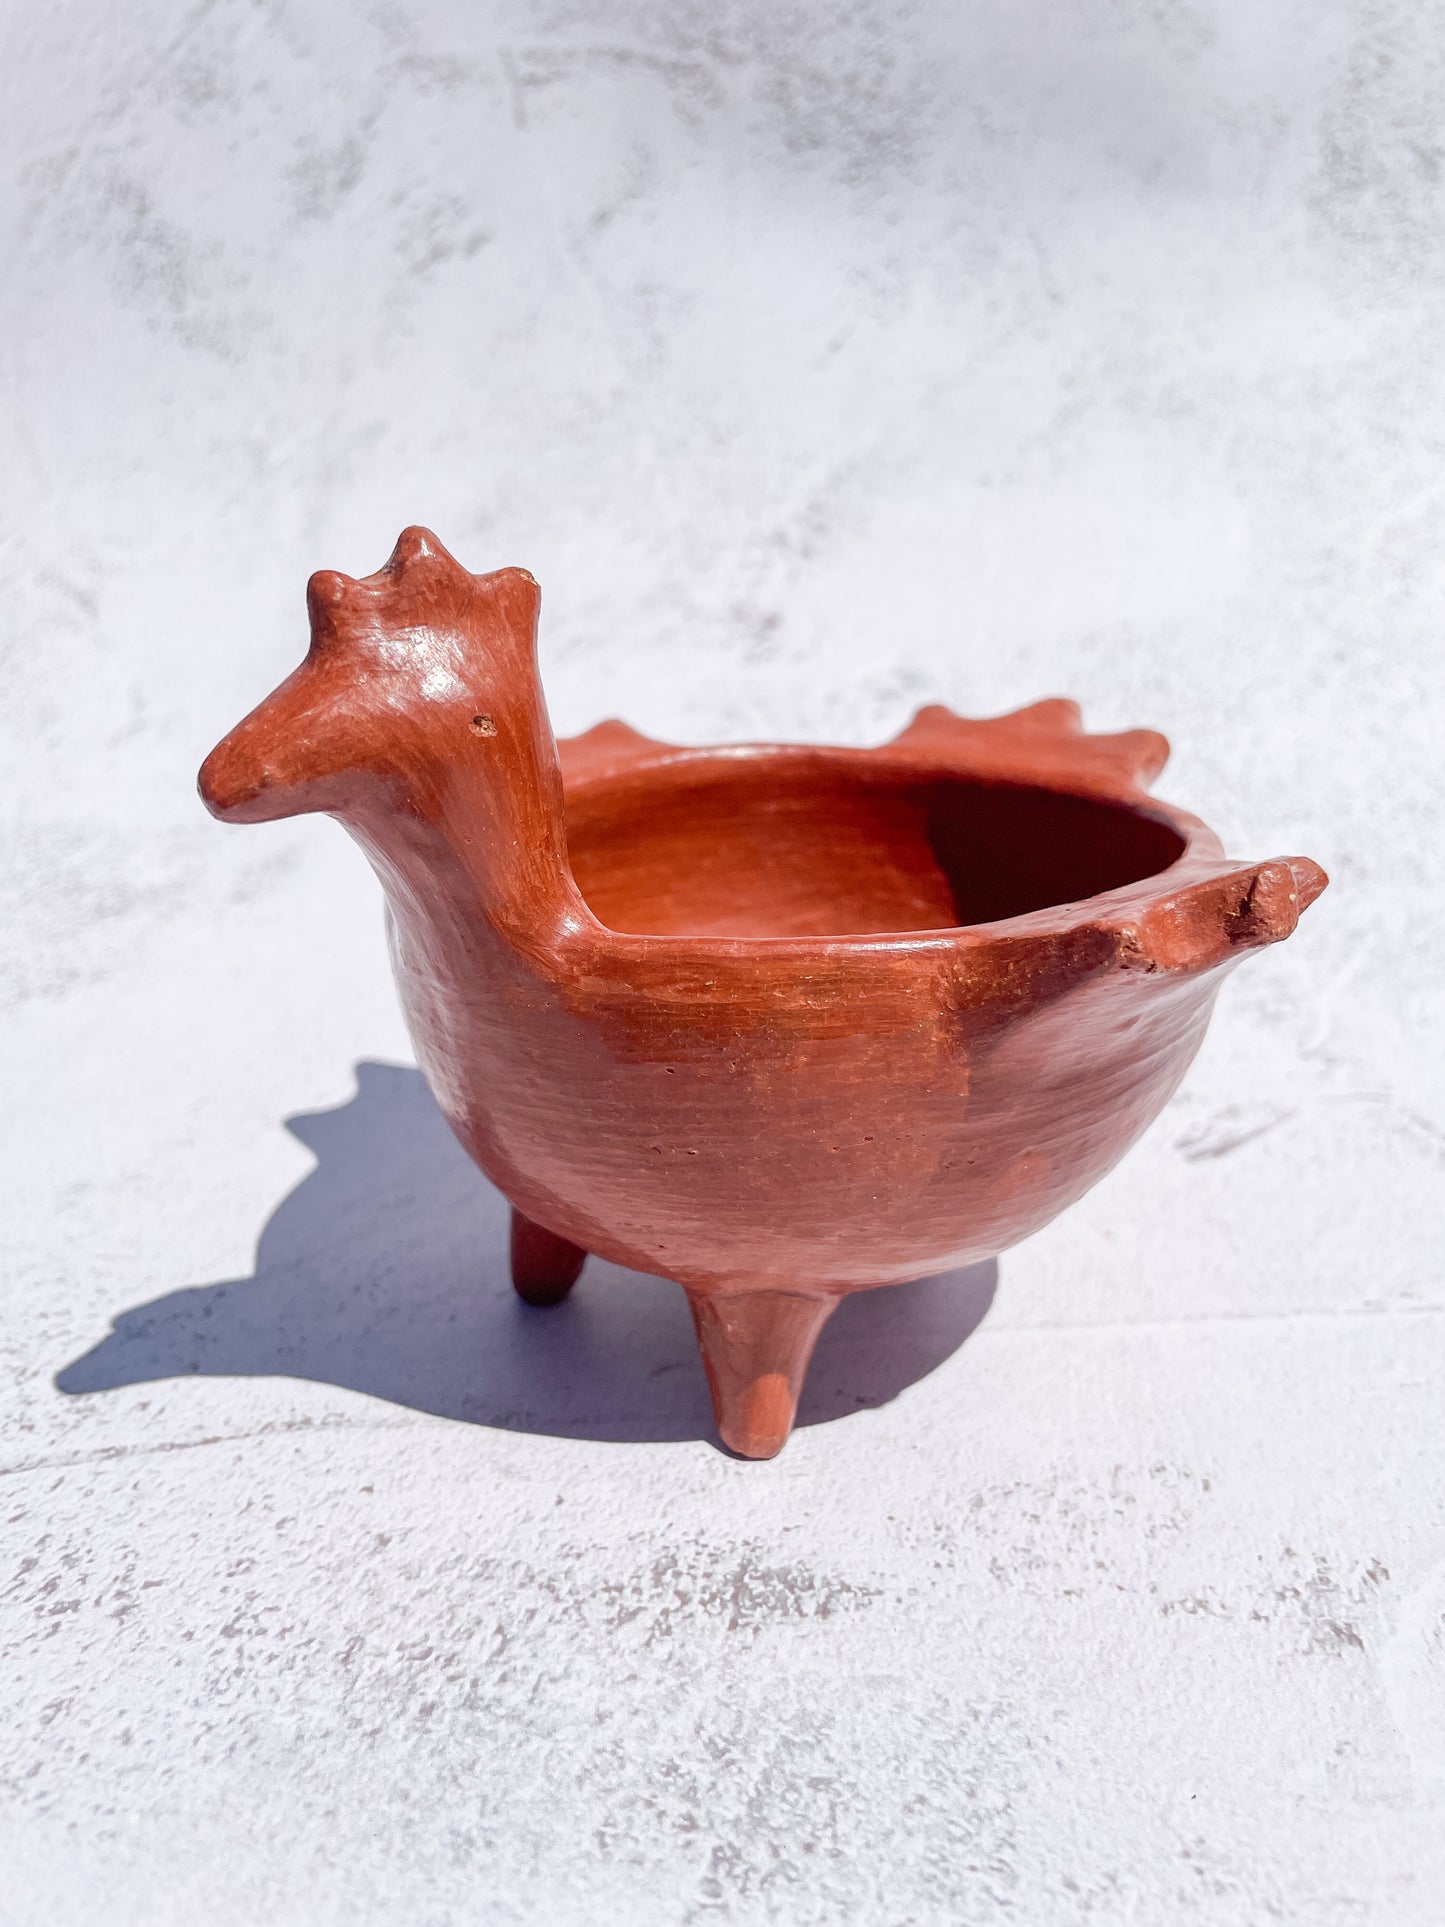 Oaxaca Red Clay Pottery Oaxaca Pottery Duck Bowl Handmade Red Pottery Salsera de Pato